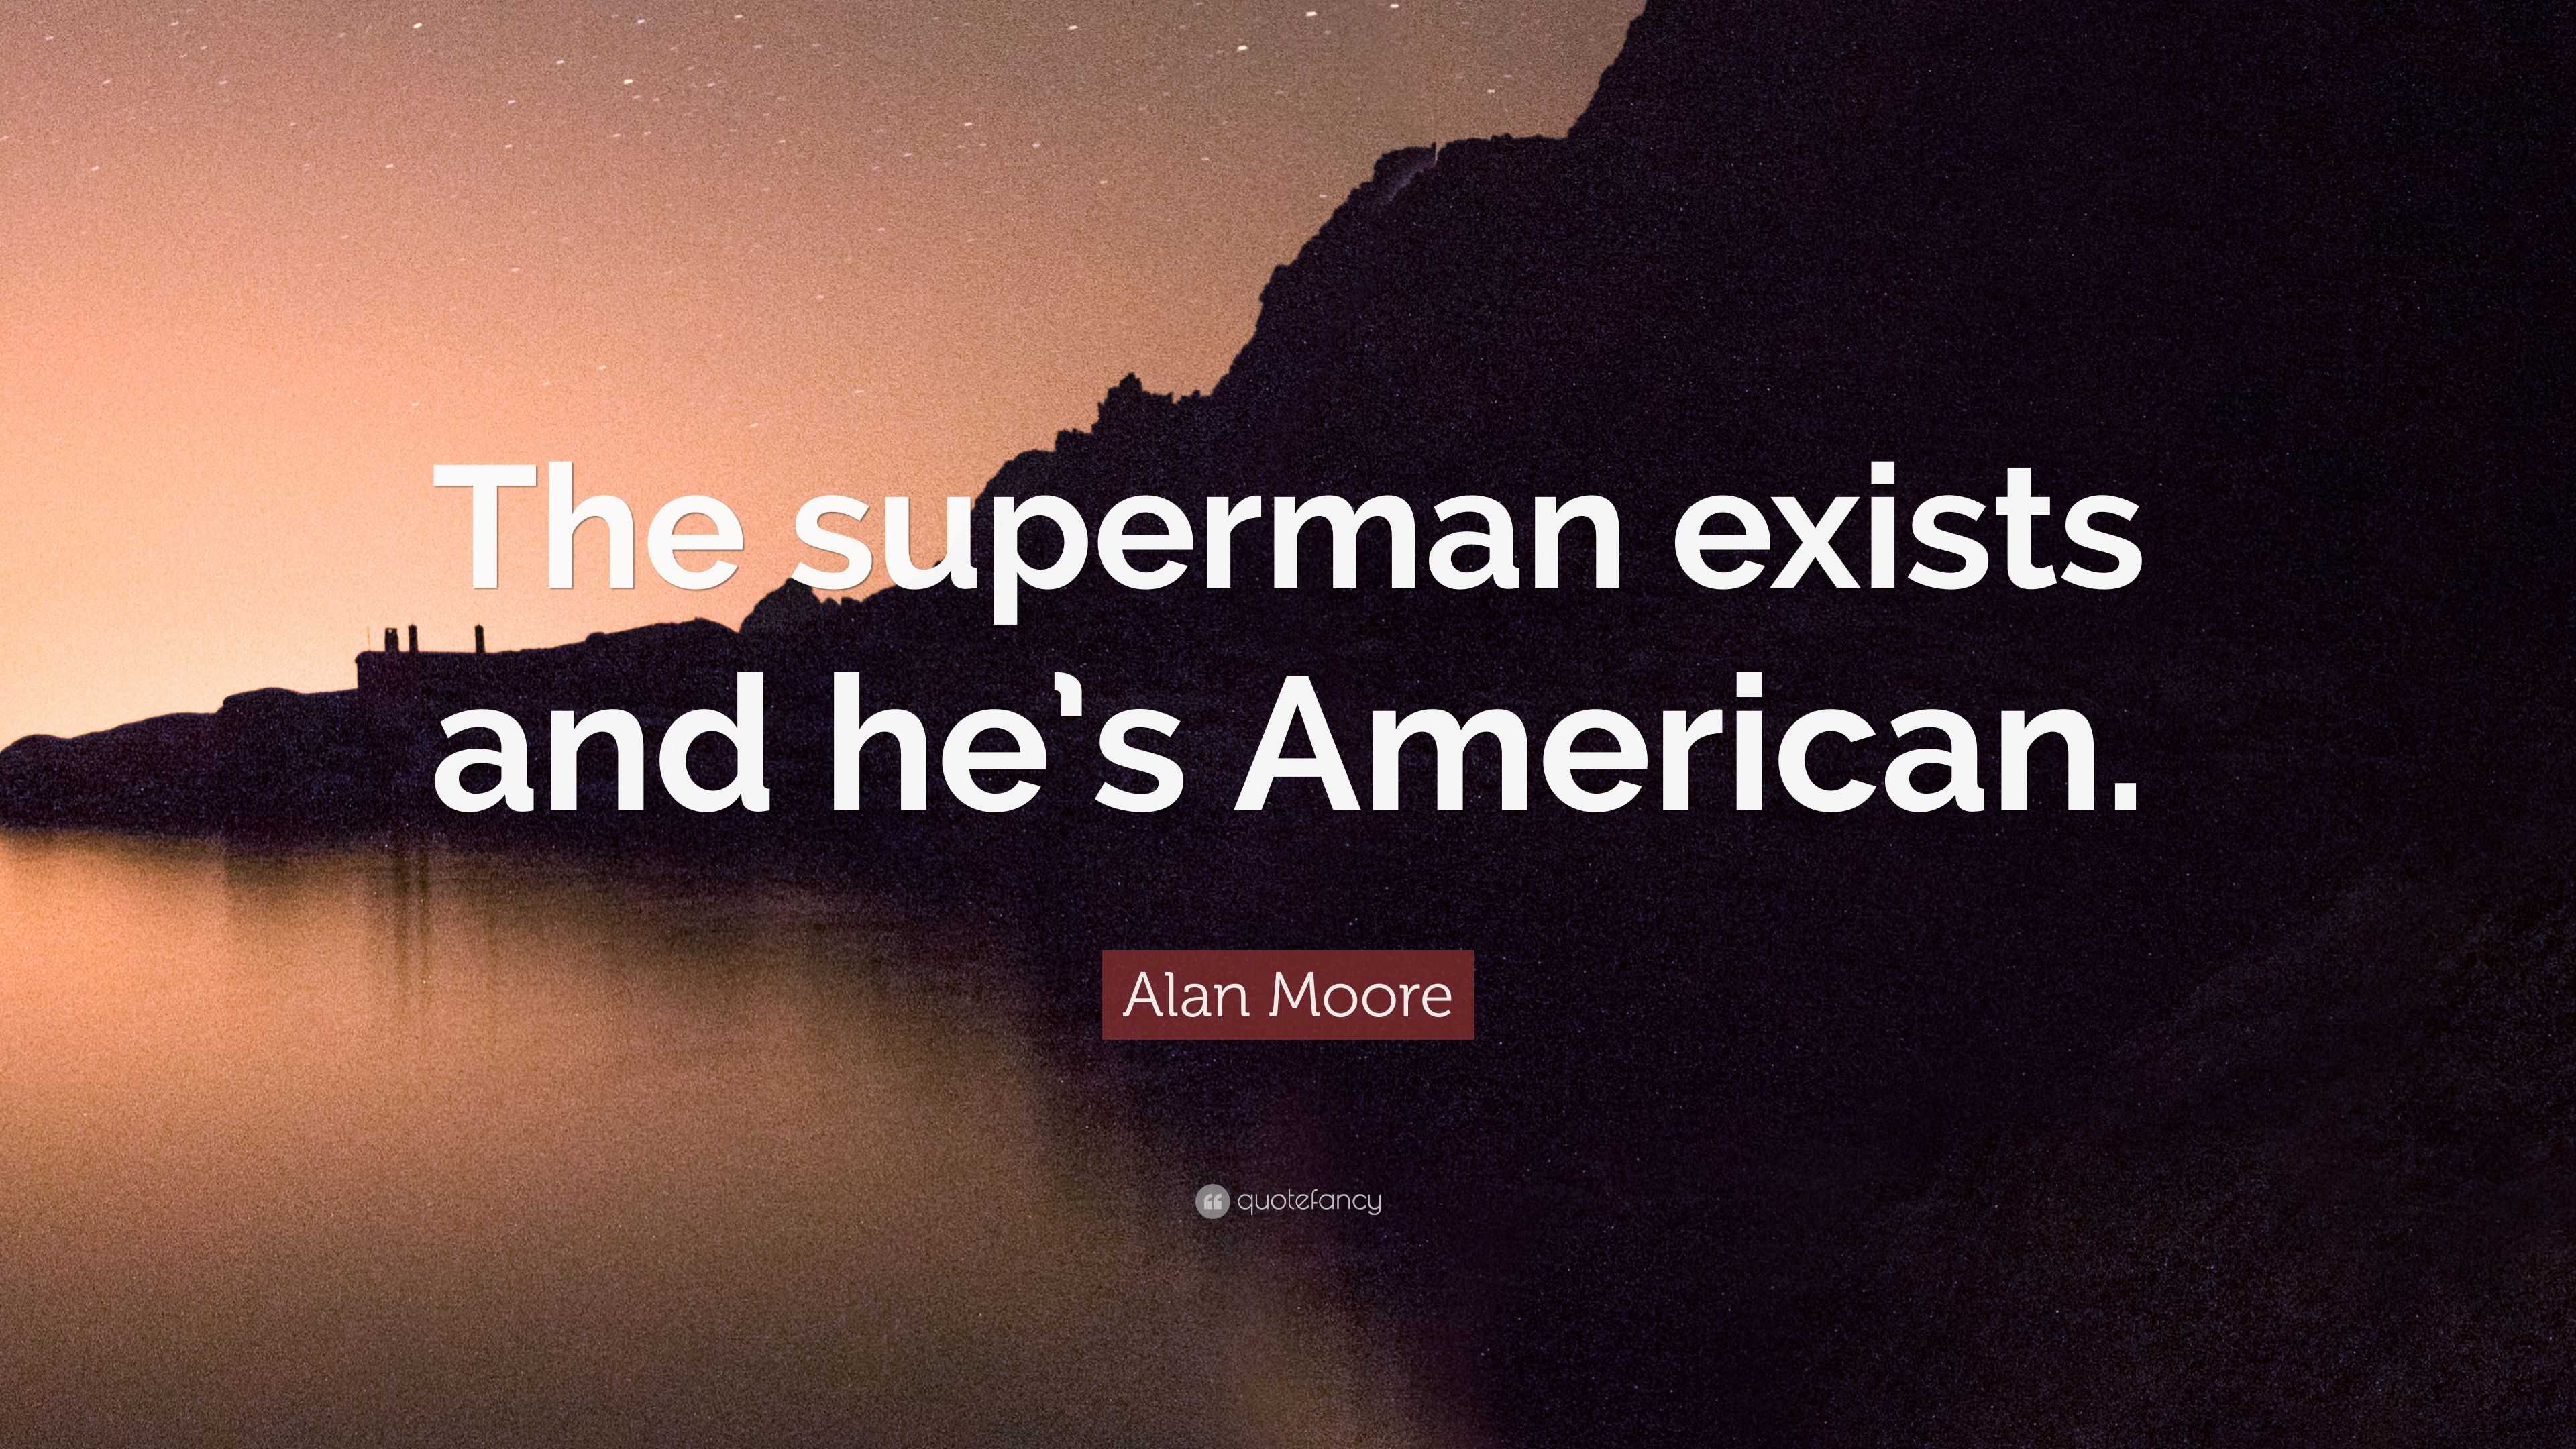 alan moore on superman